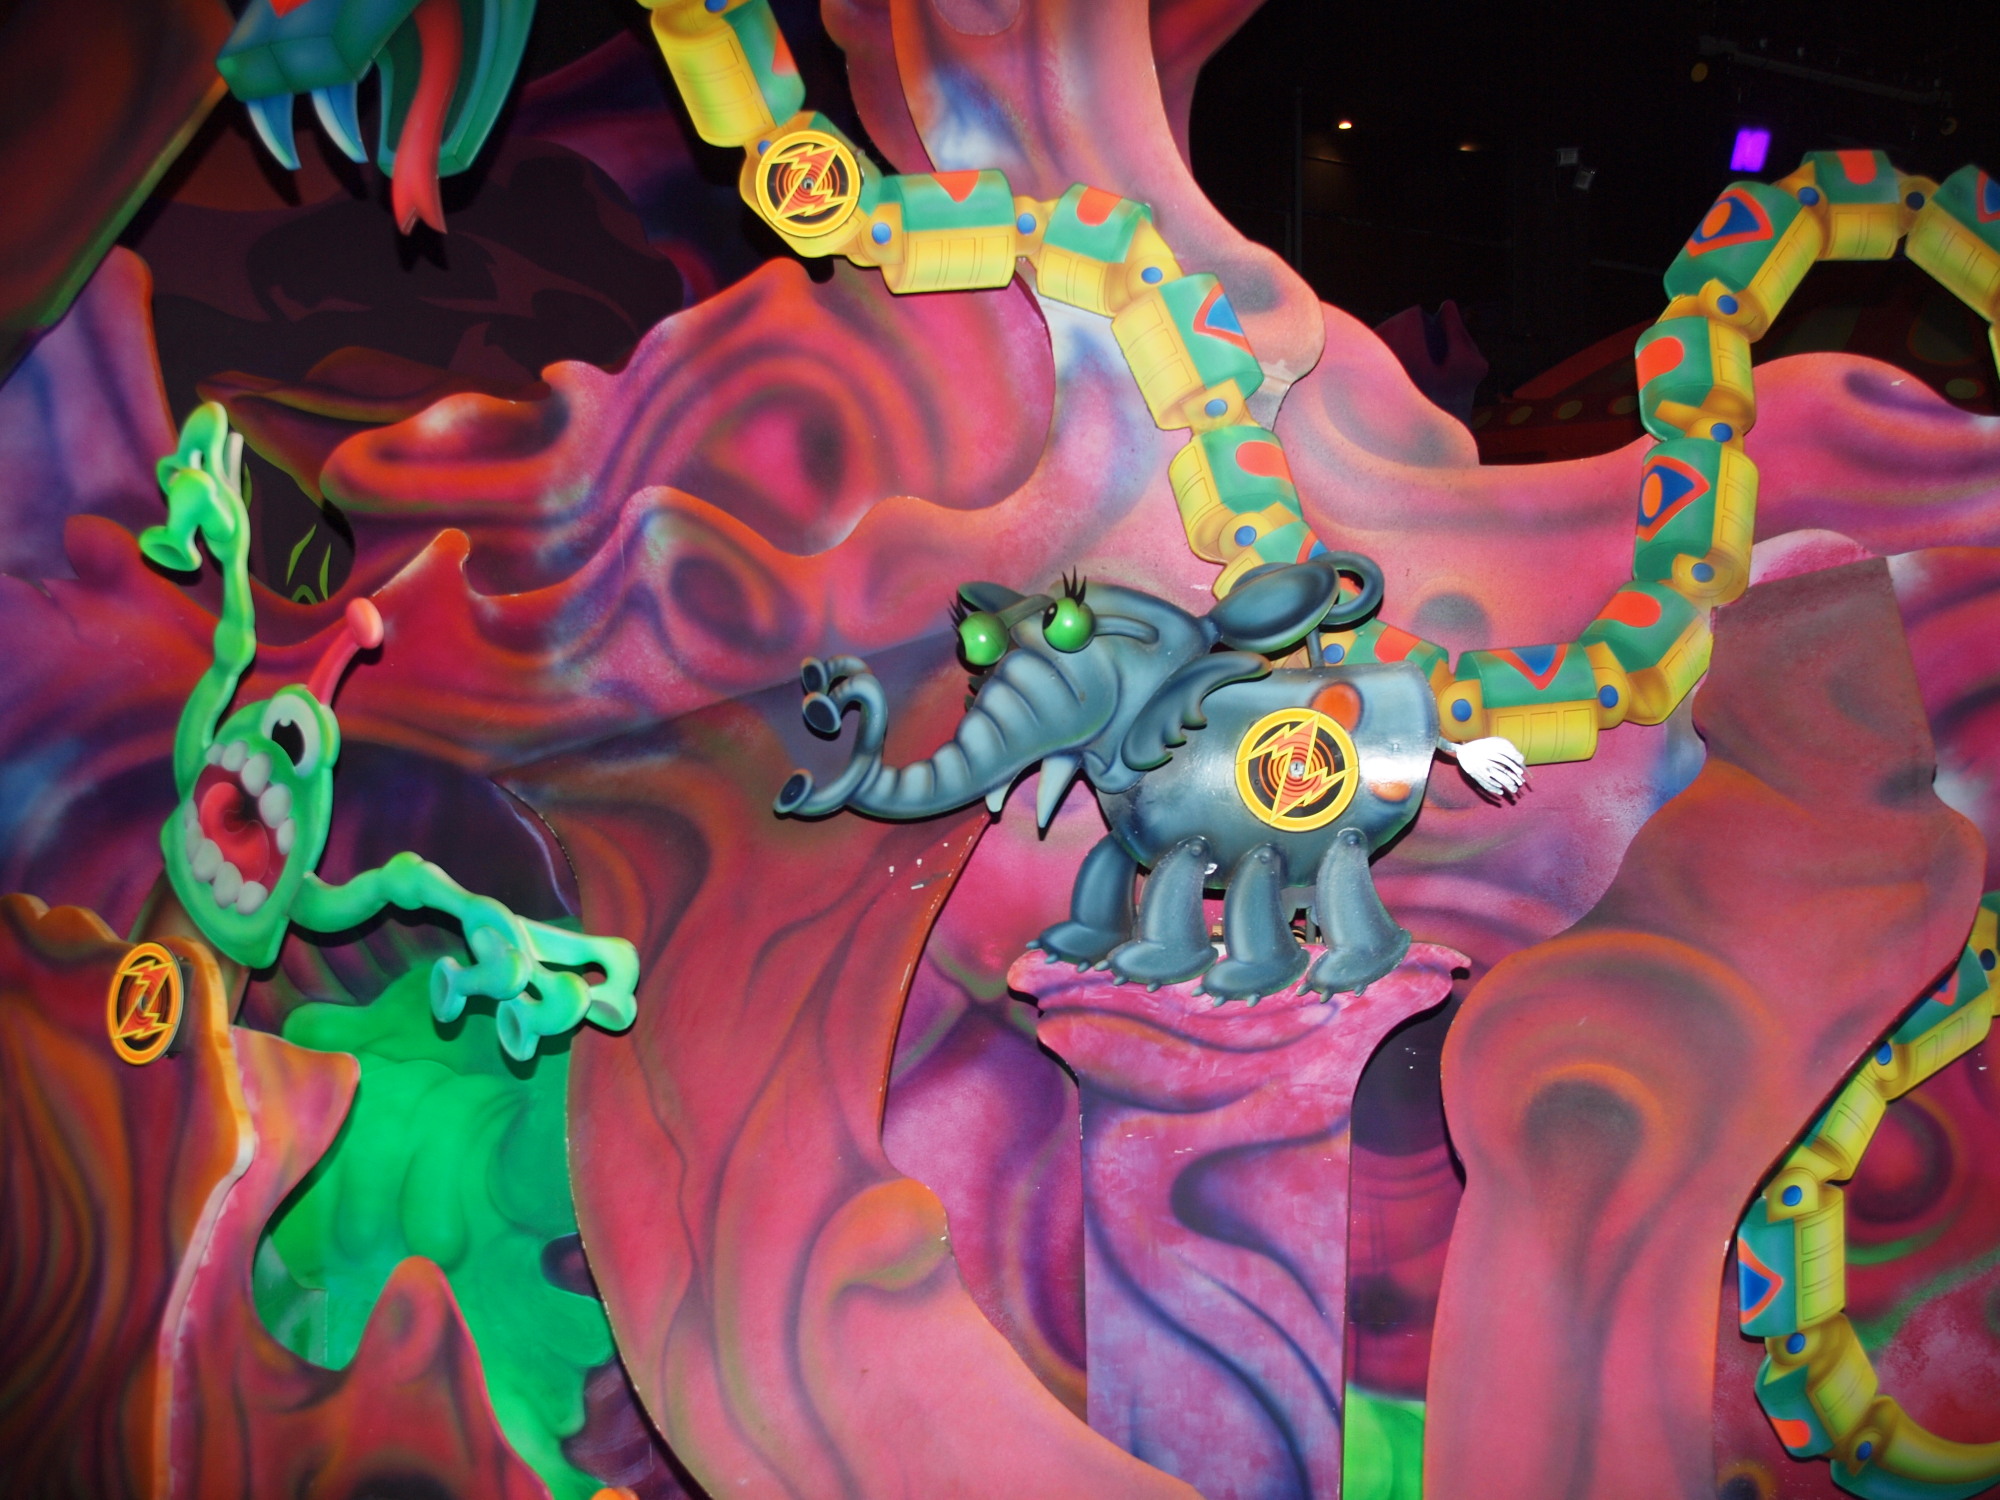 Magic Kingdom - Tomorrowland - Buzz Lightyear